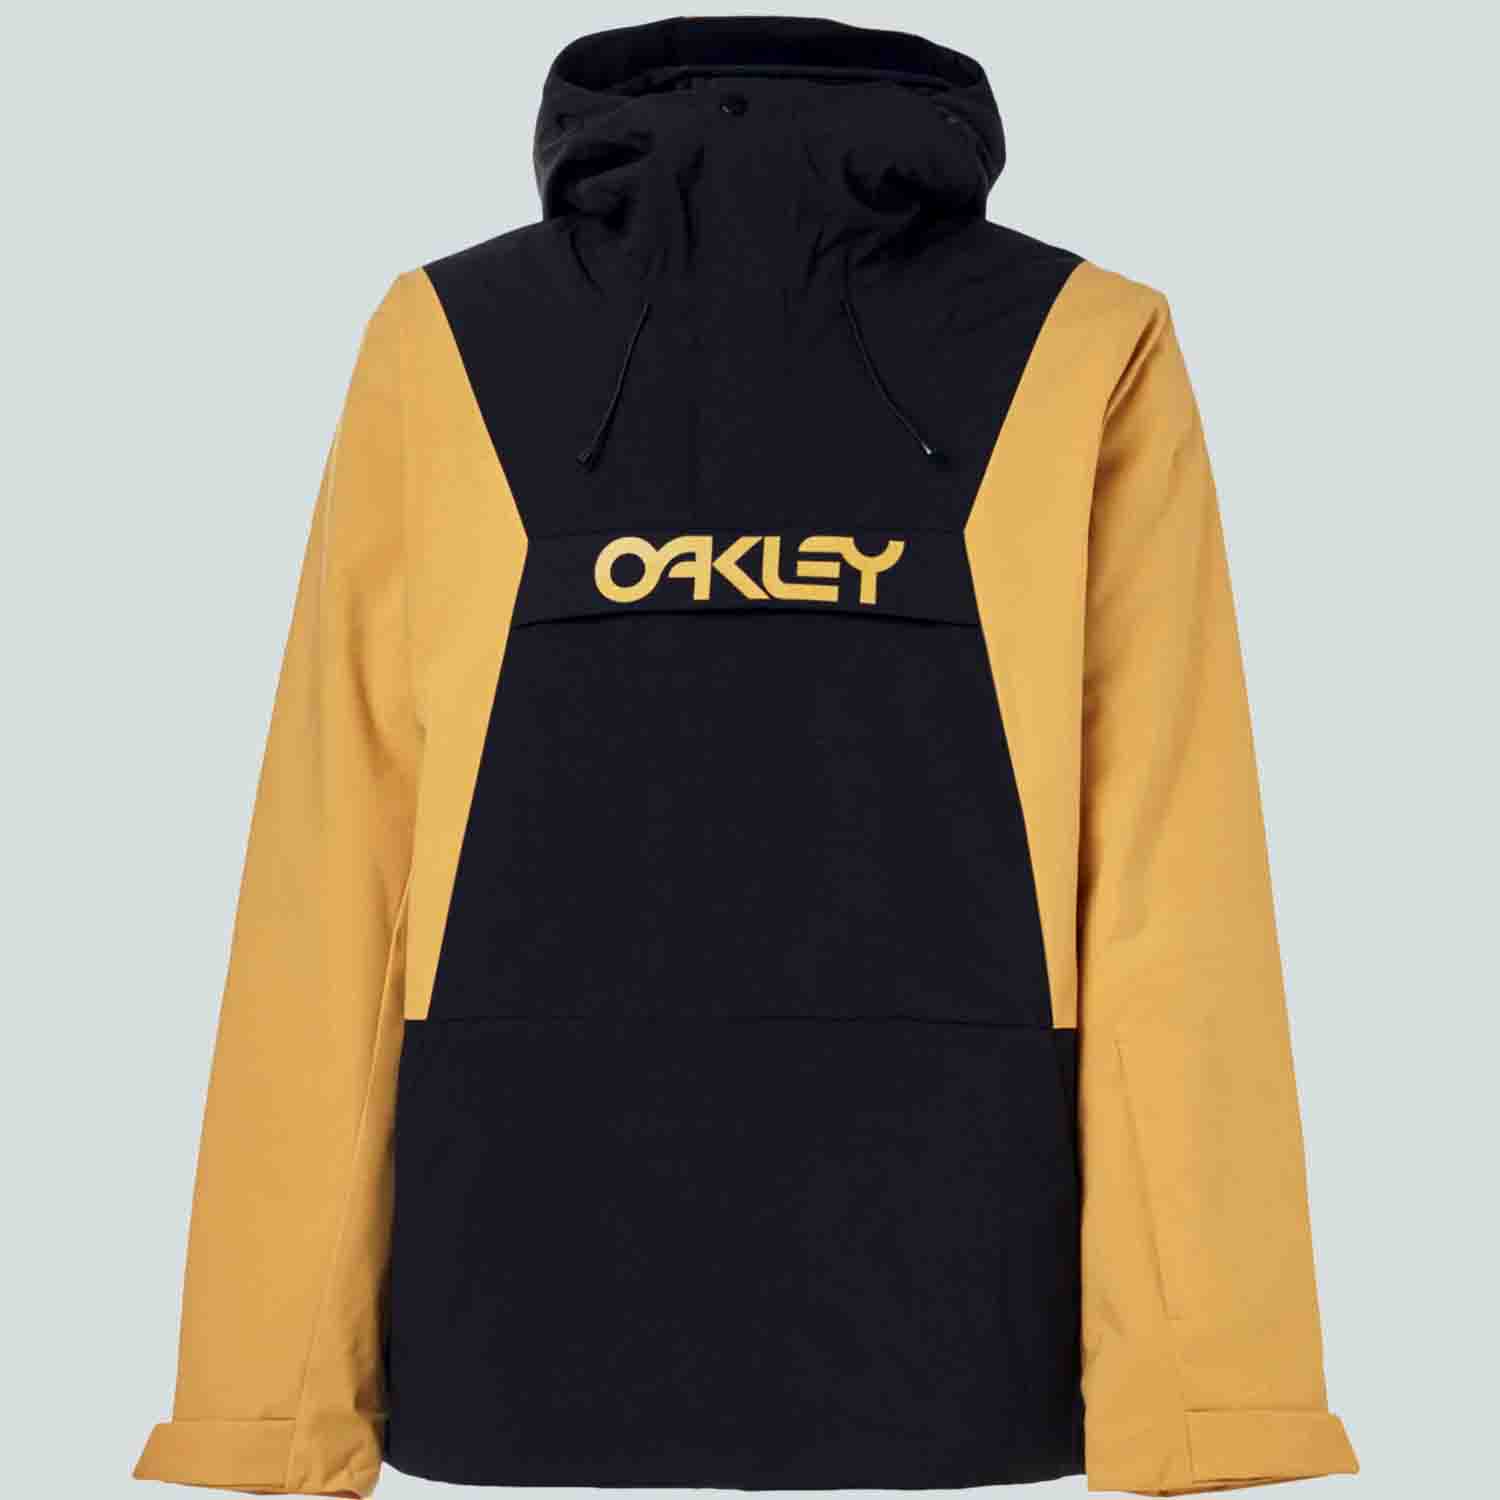 oakley outerwear 2019